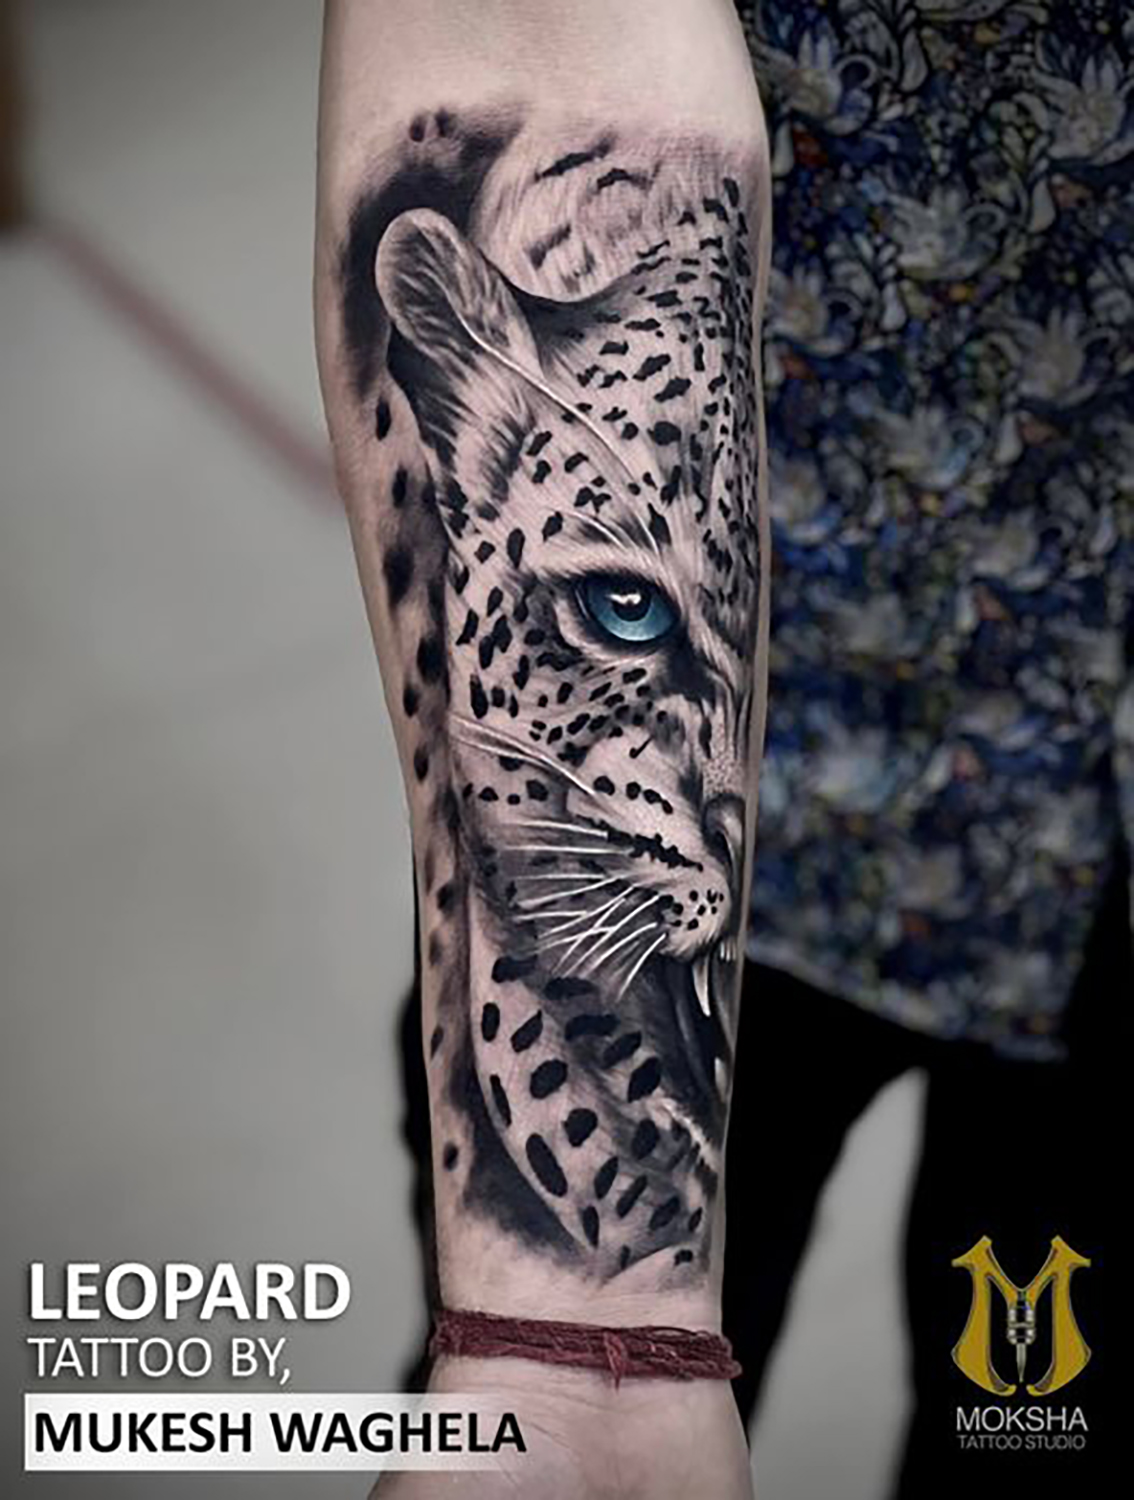 Leopard Tattoo.